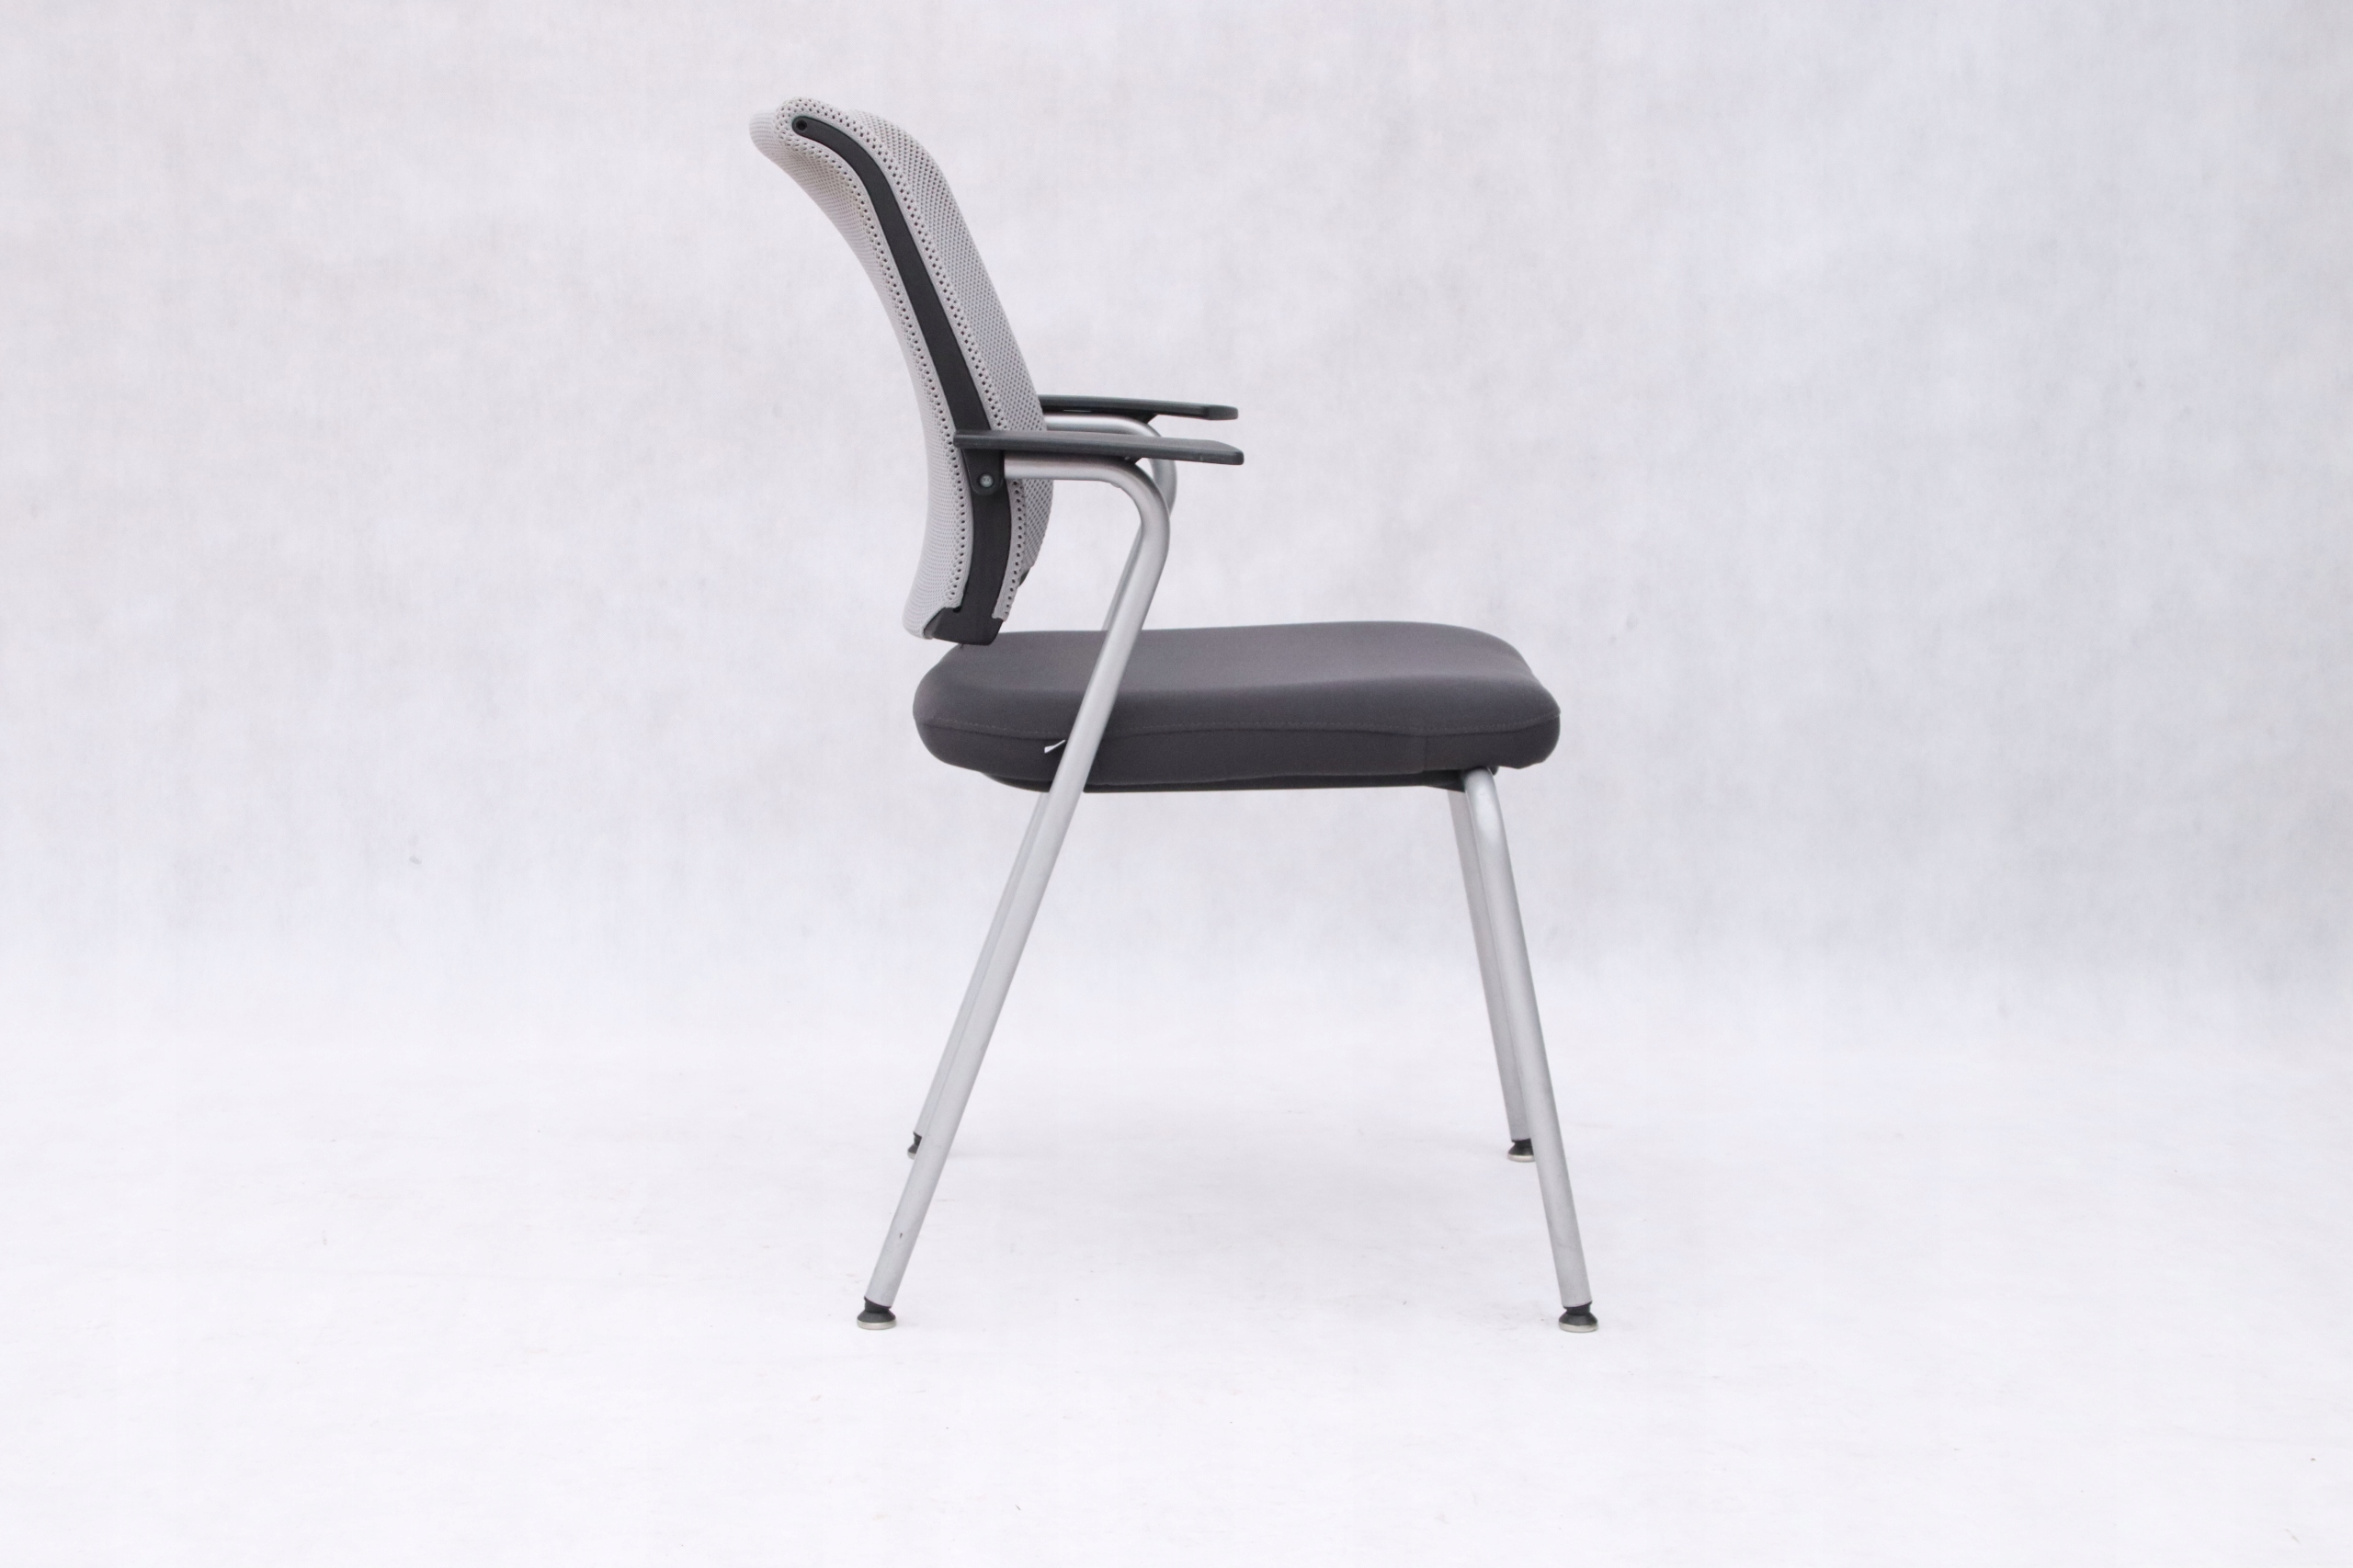 krzesło Sedus NW-223